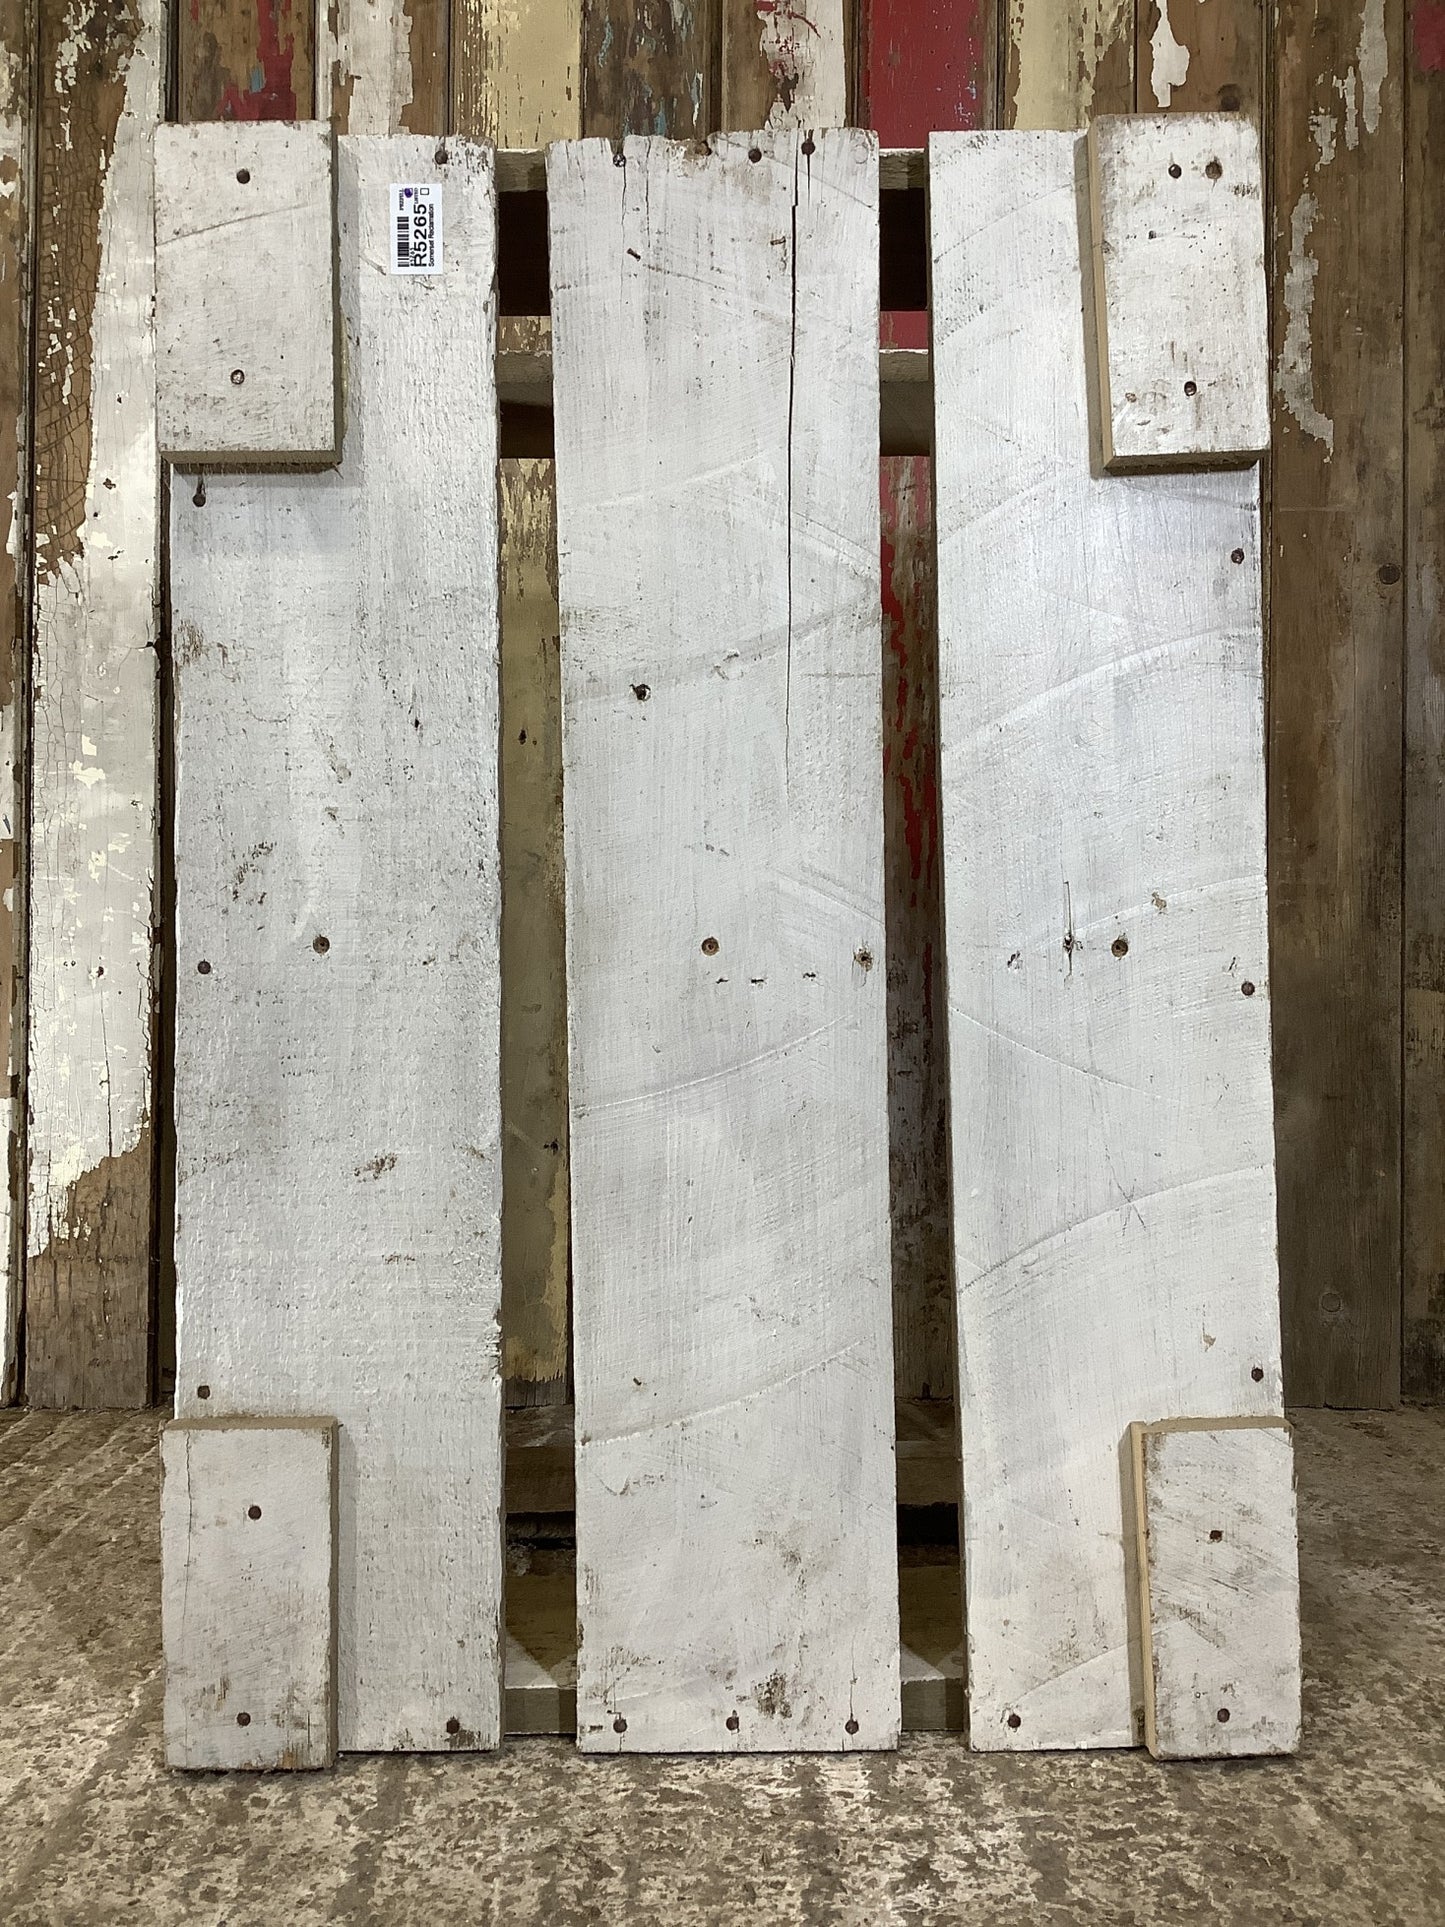 Large Painted Pine ‘LOG BOX’ 1'5"Hx2'5"W